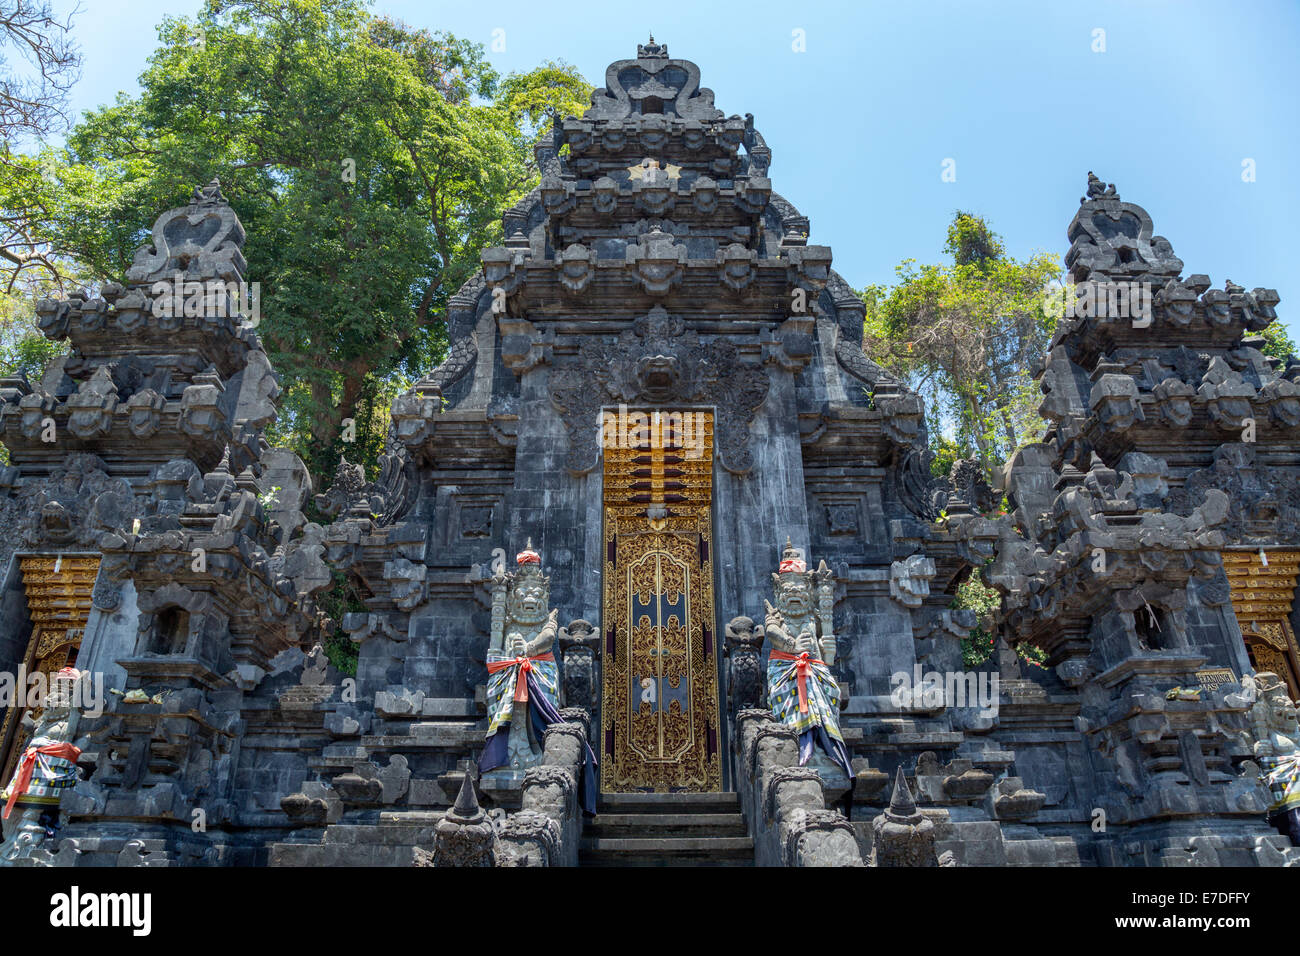 Goa Lawah temple in Bali, Indonesia Stock Photo